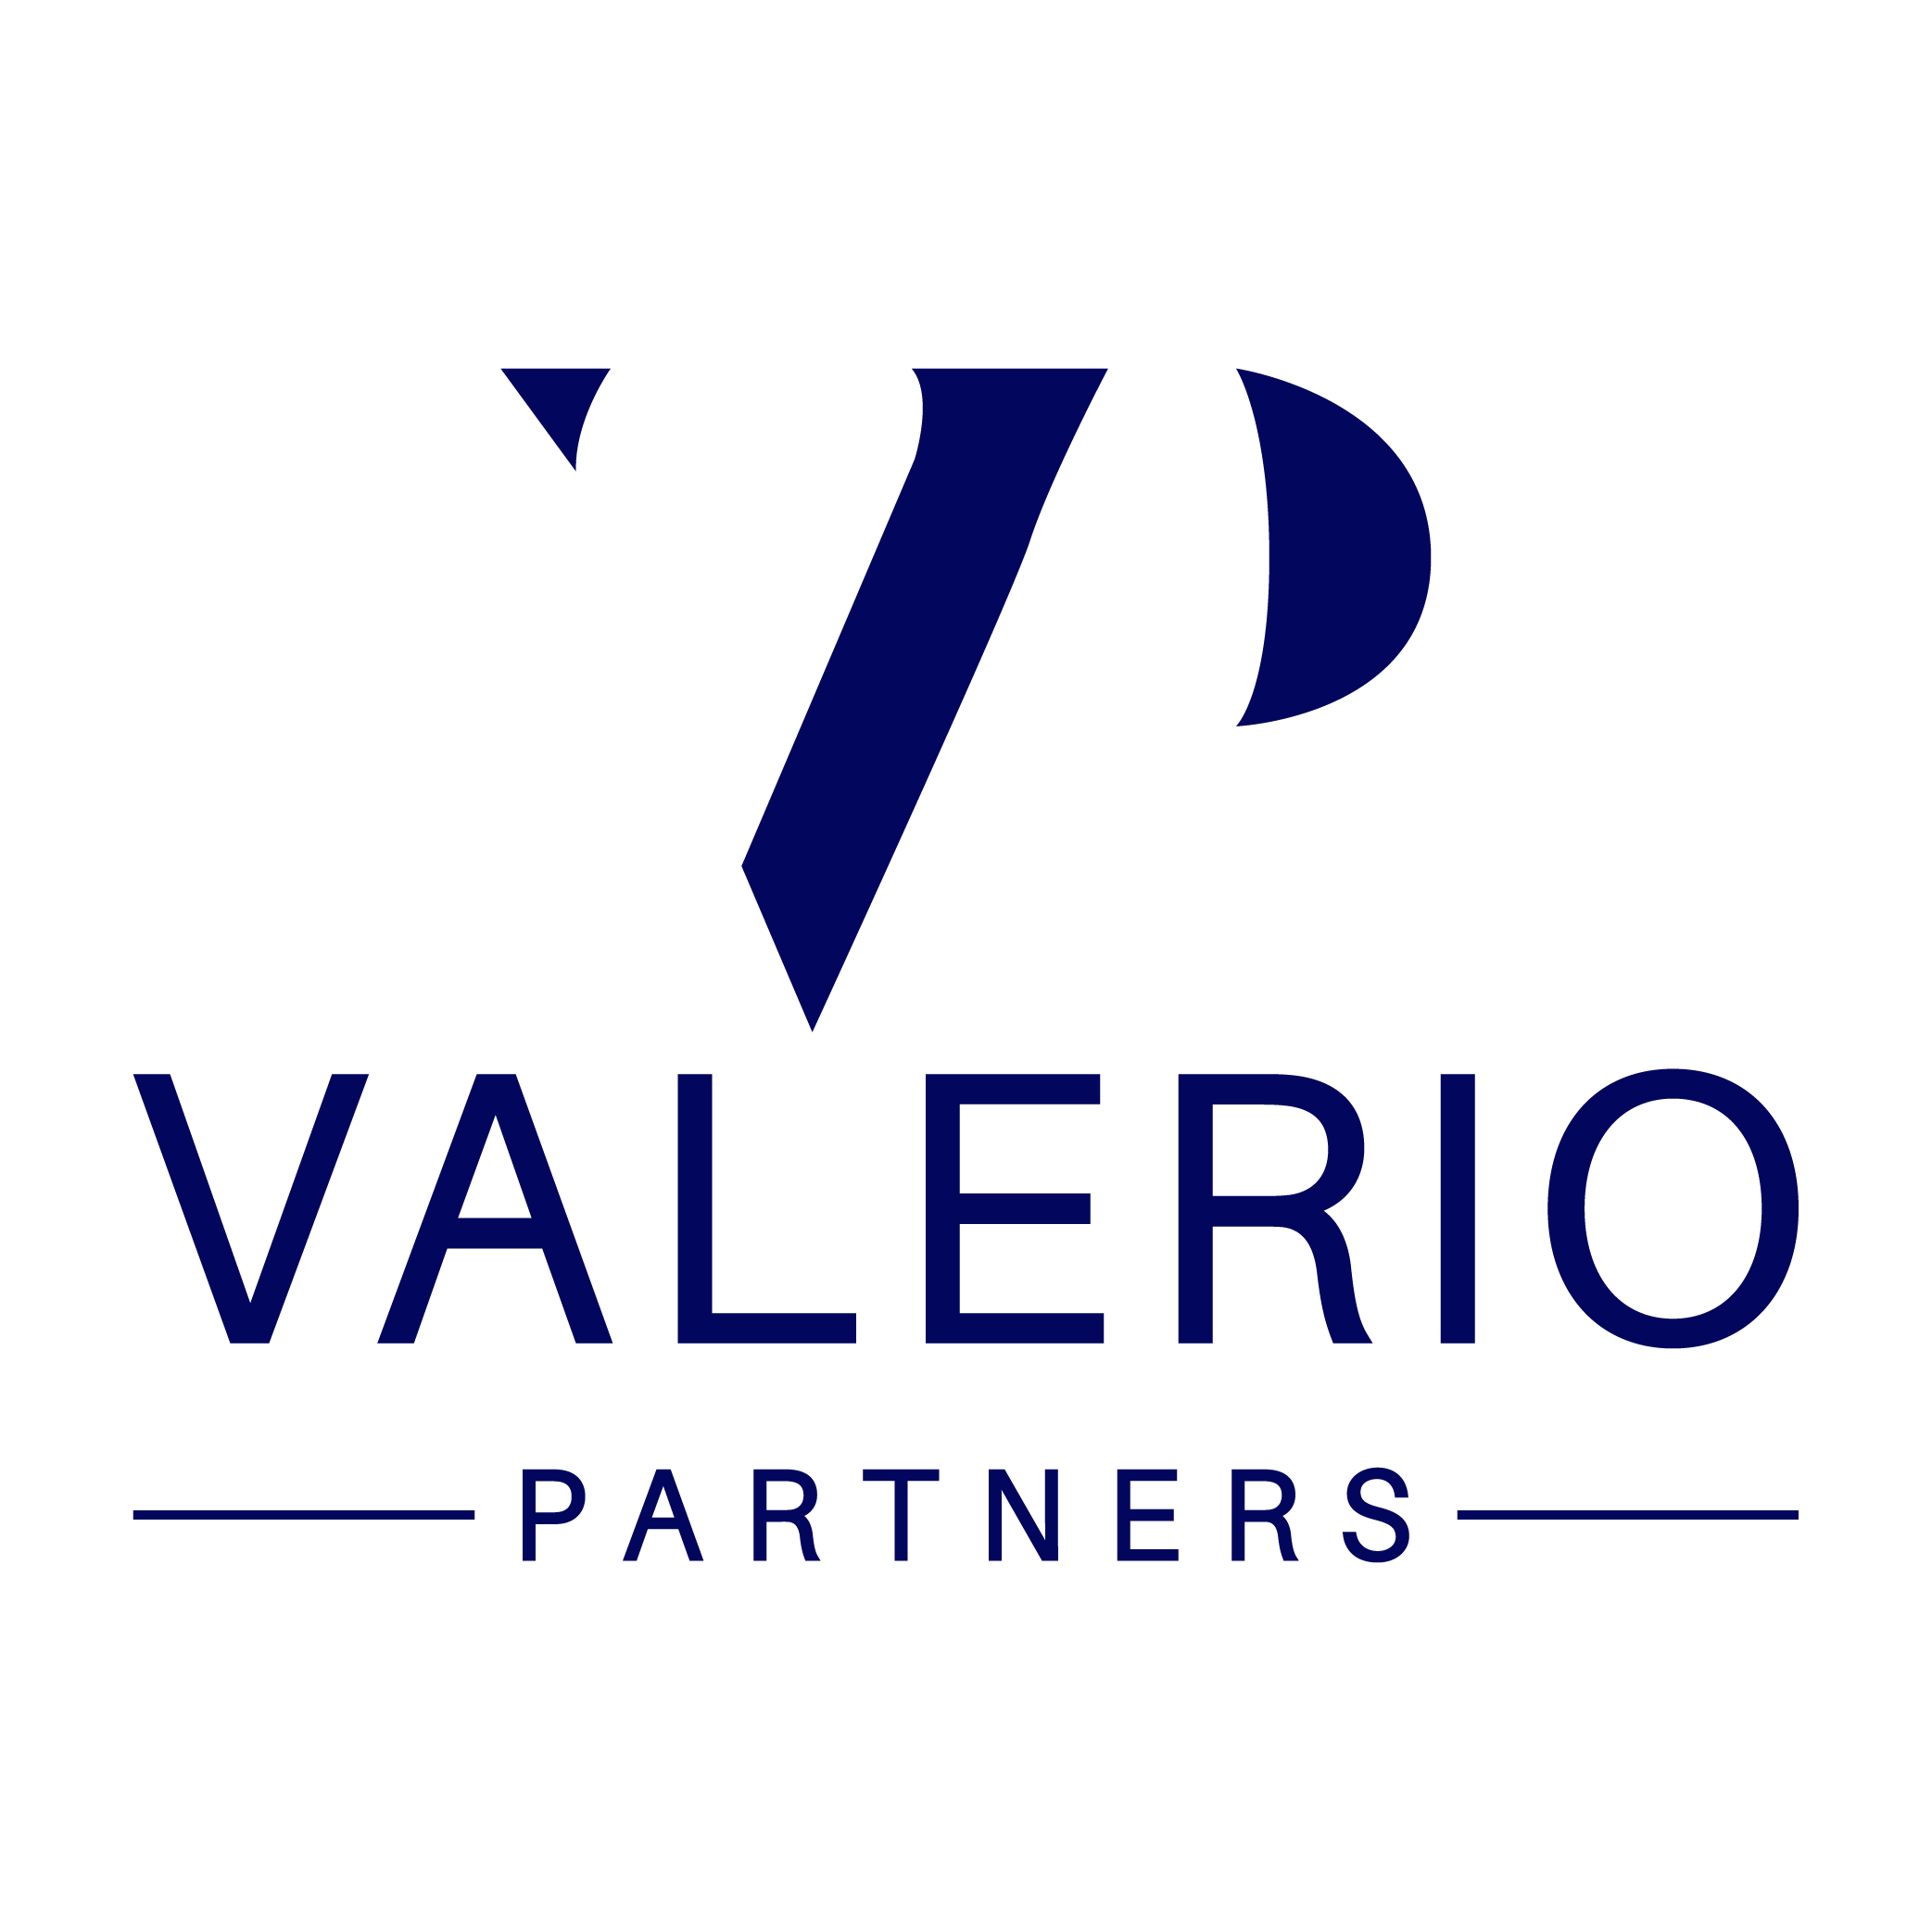 Valerio Partners